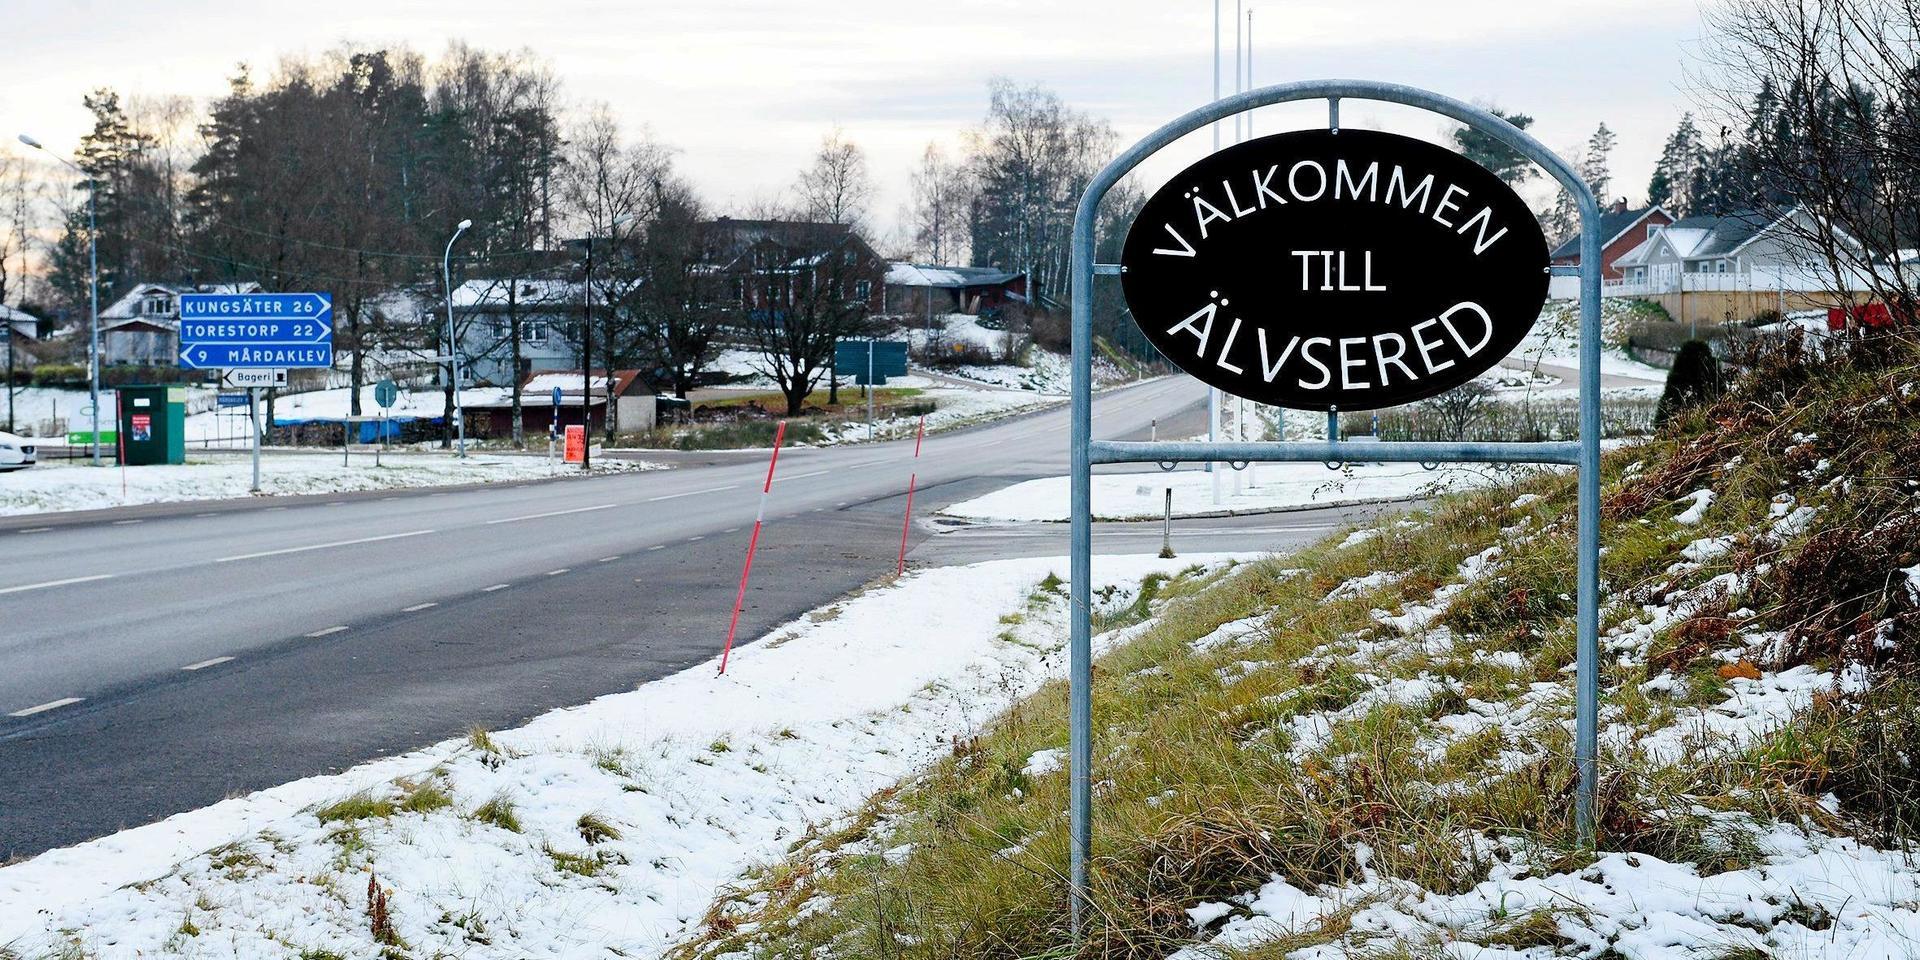 En man ska ha blivit pistolhotad i sitt hem i Älvsered i december.